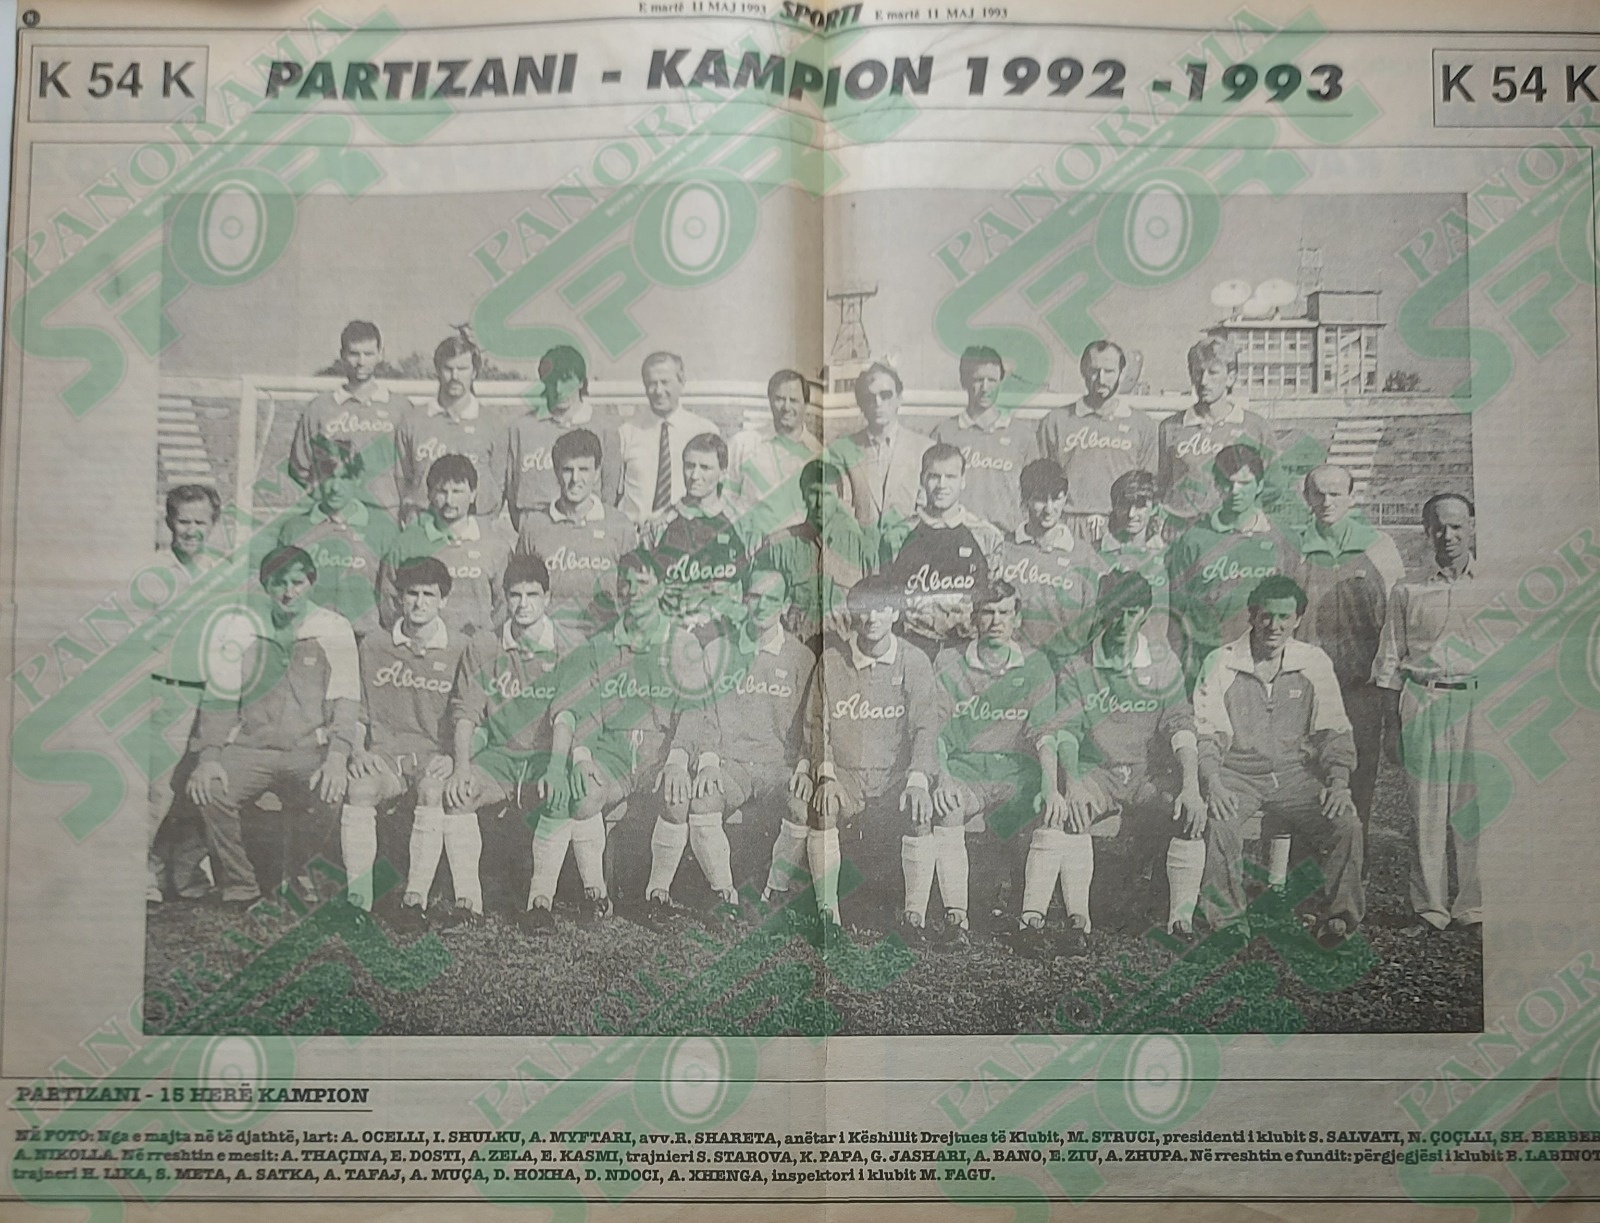 Posteri i Partizanit - Kampionia 1992-‘93 botuar në gazetën “Sporti” (“Sporti Shqiptar”) më 11 maj 1993.